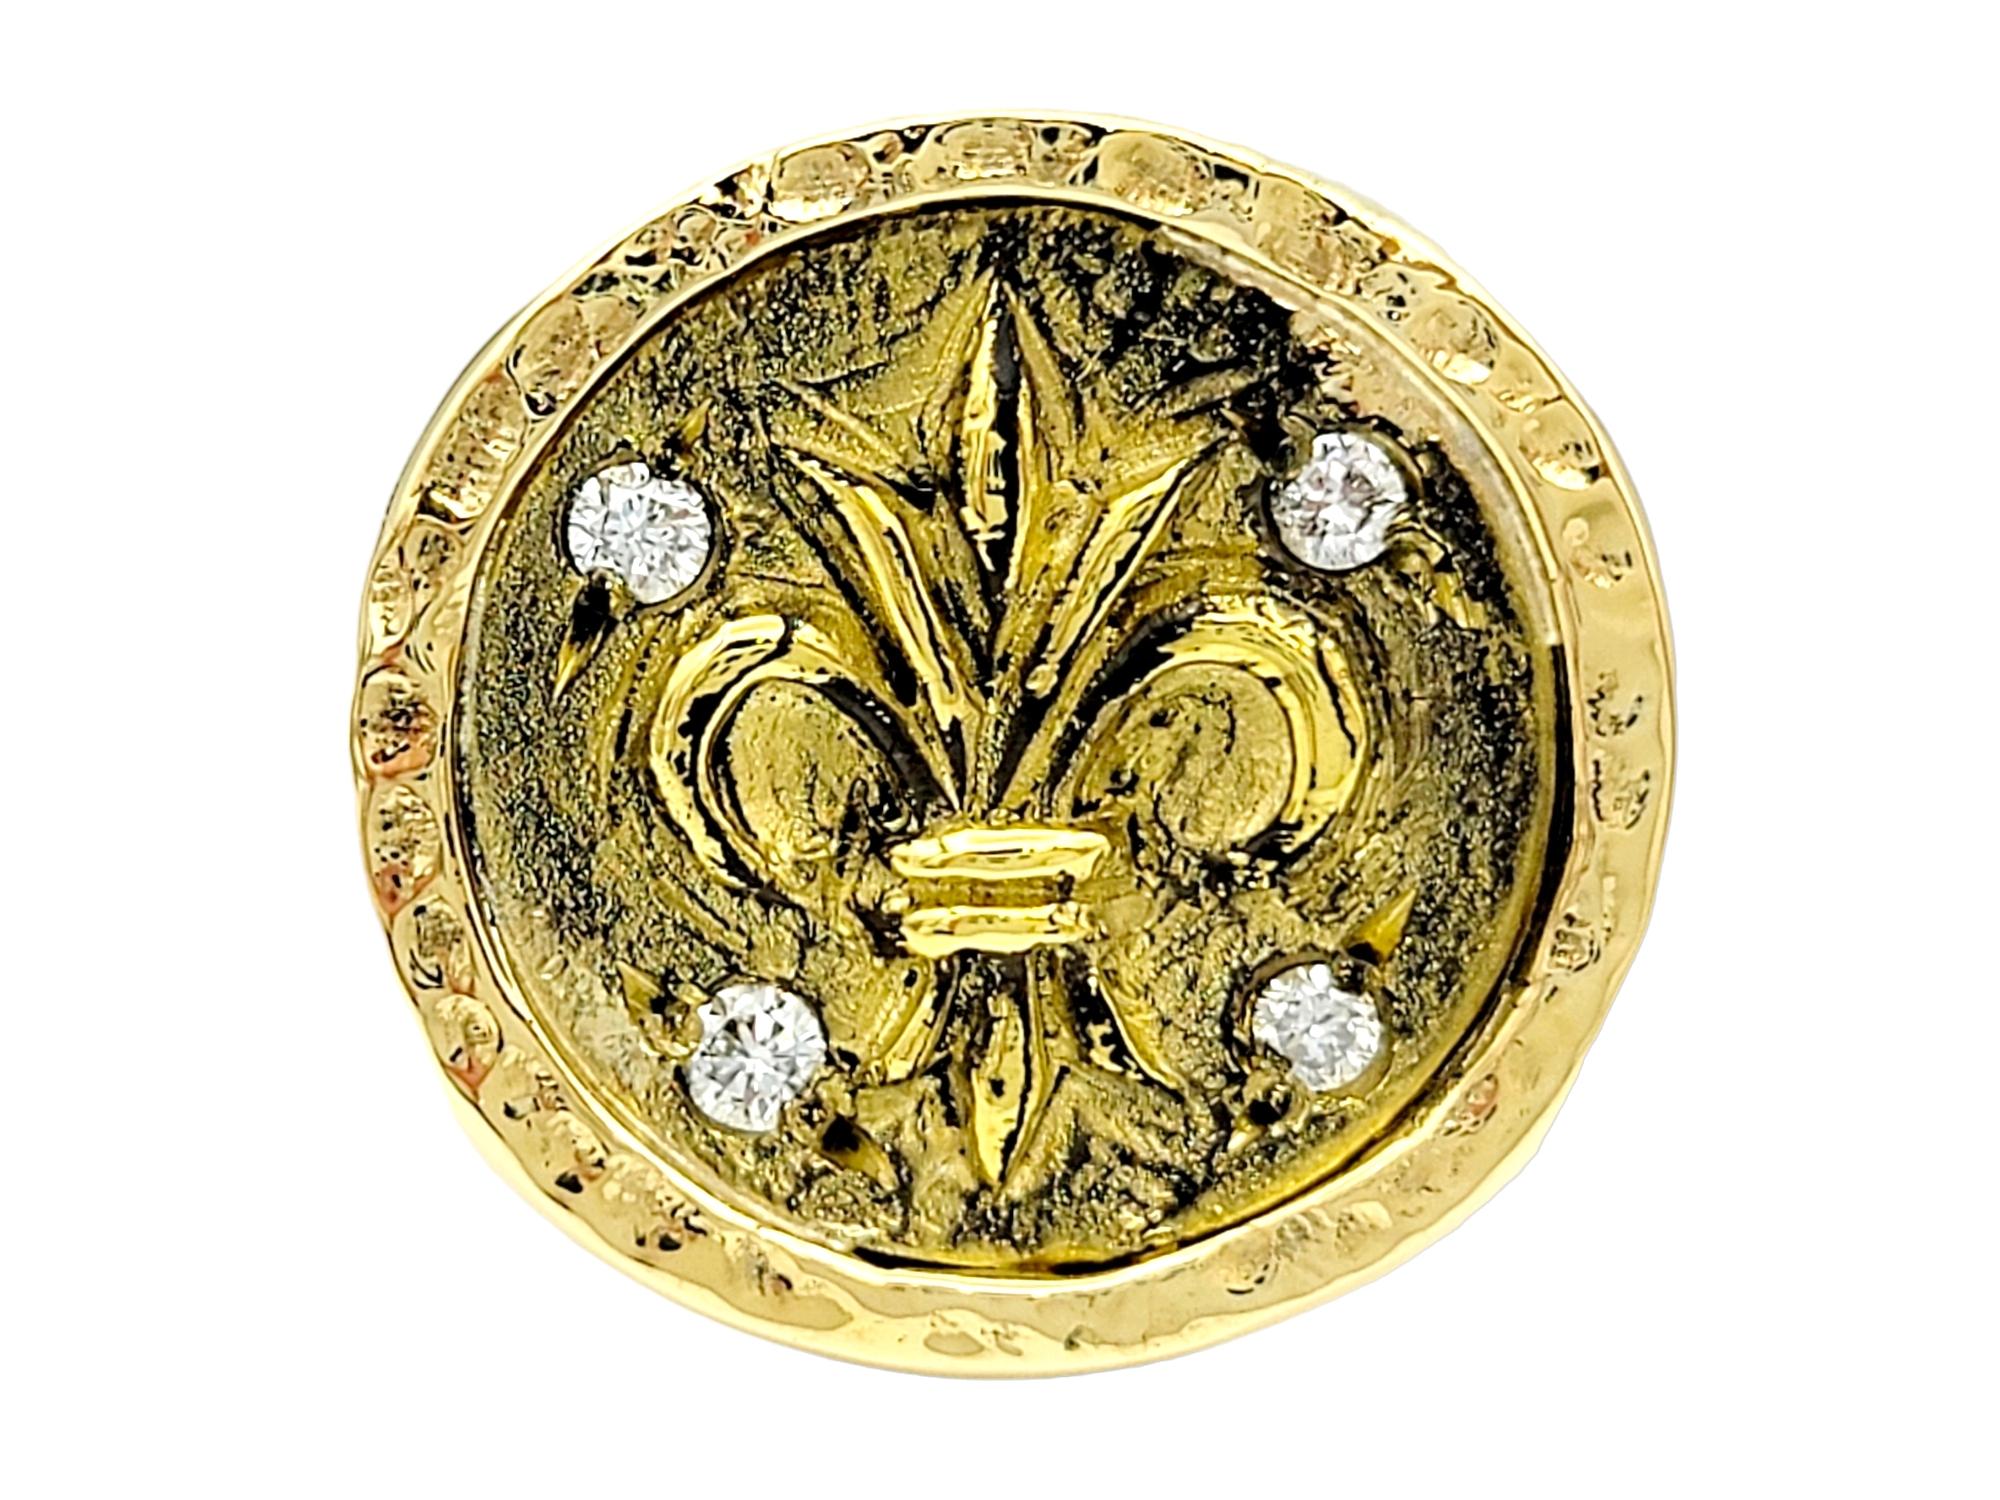 Taille de l'anneau : 5.75 

Cette magnifique chevalière en or jaune 22 carats est une véritable œuvre d'art, d'une élégance impressionnante et royale. En son cœur se trouve une fleur de lis détaillée, délicatement gravée dans l'or. Cet emblème